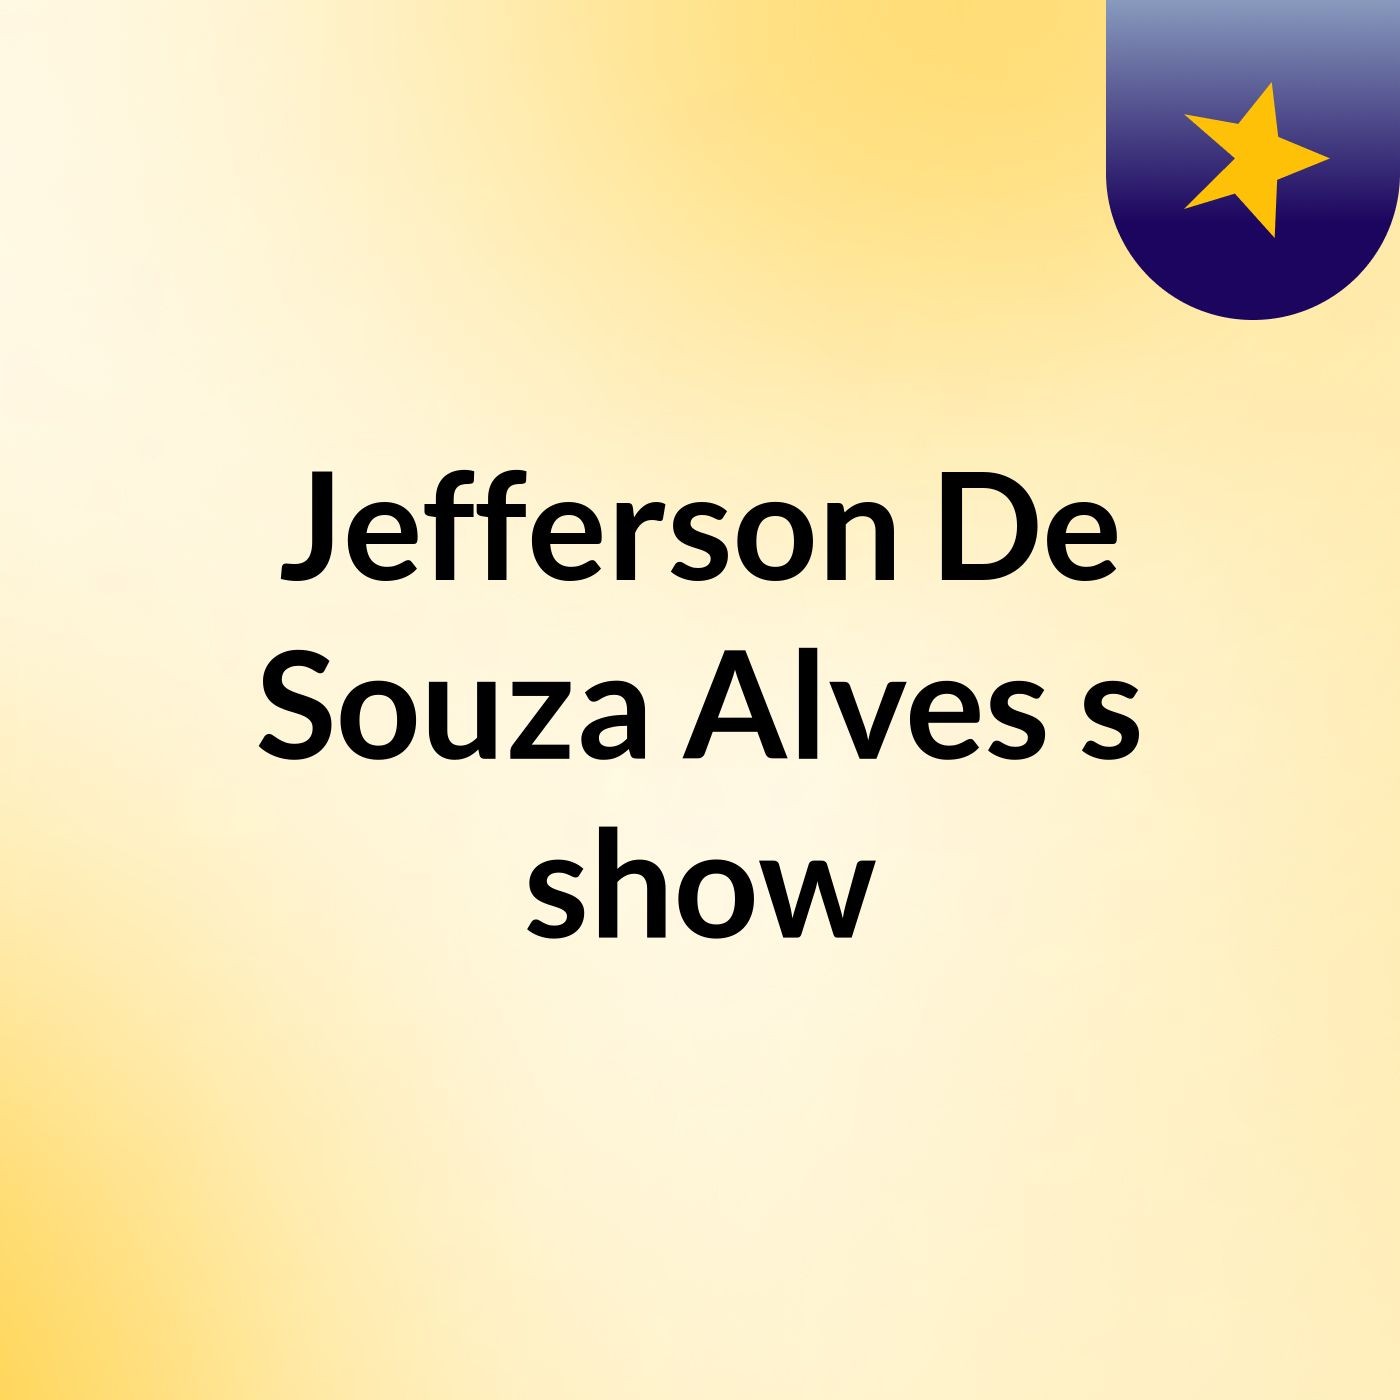 Jefferson De Souza Alves's show